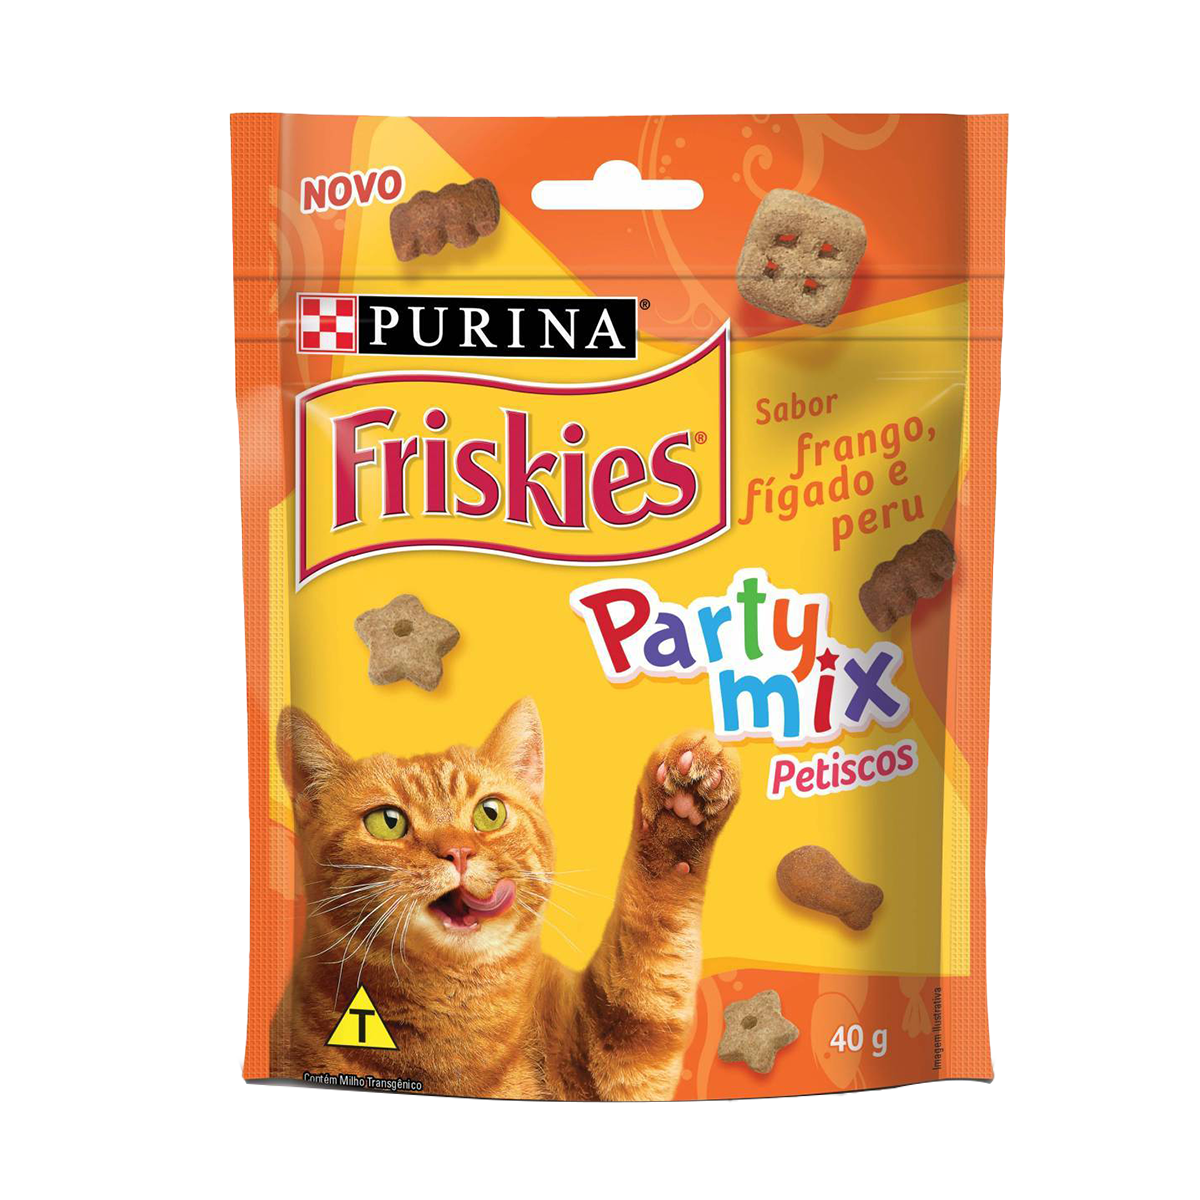 Purina-Friskies-snacks-frago-f%C3%ADgado-e-peru.png